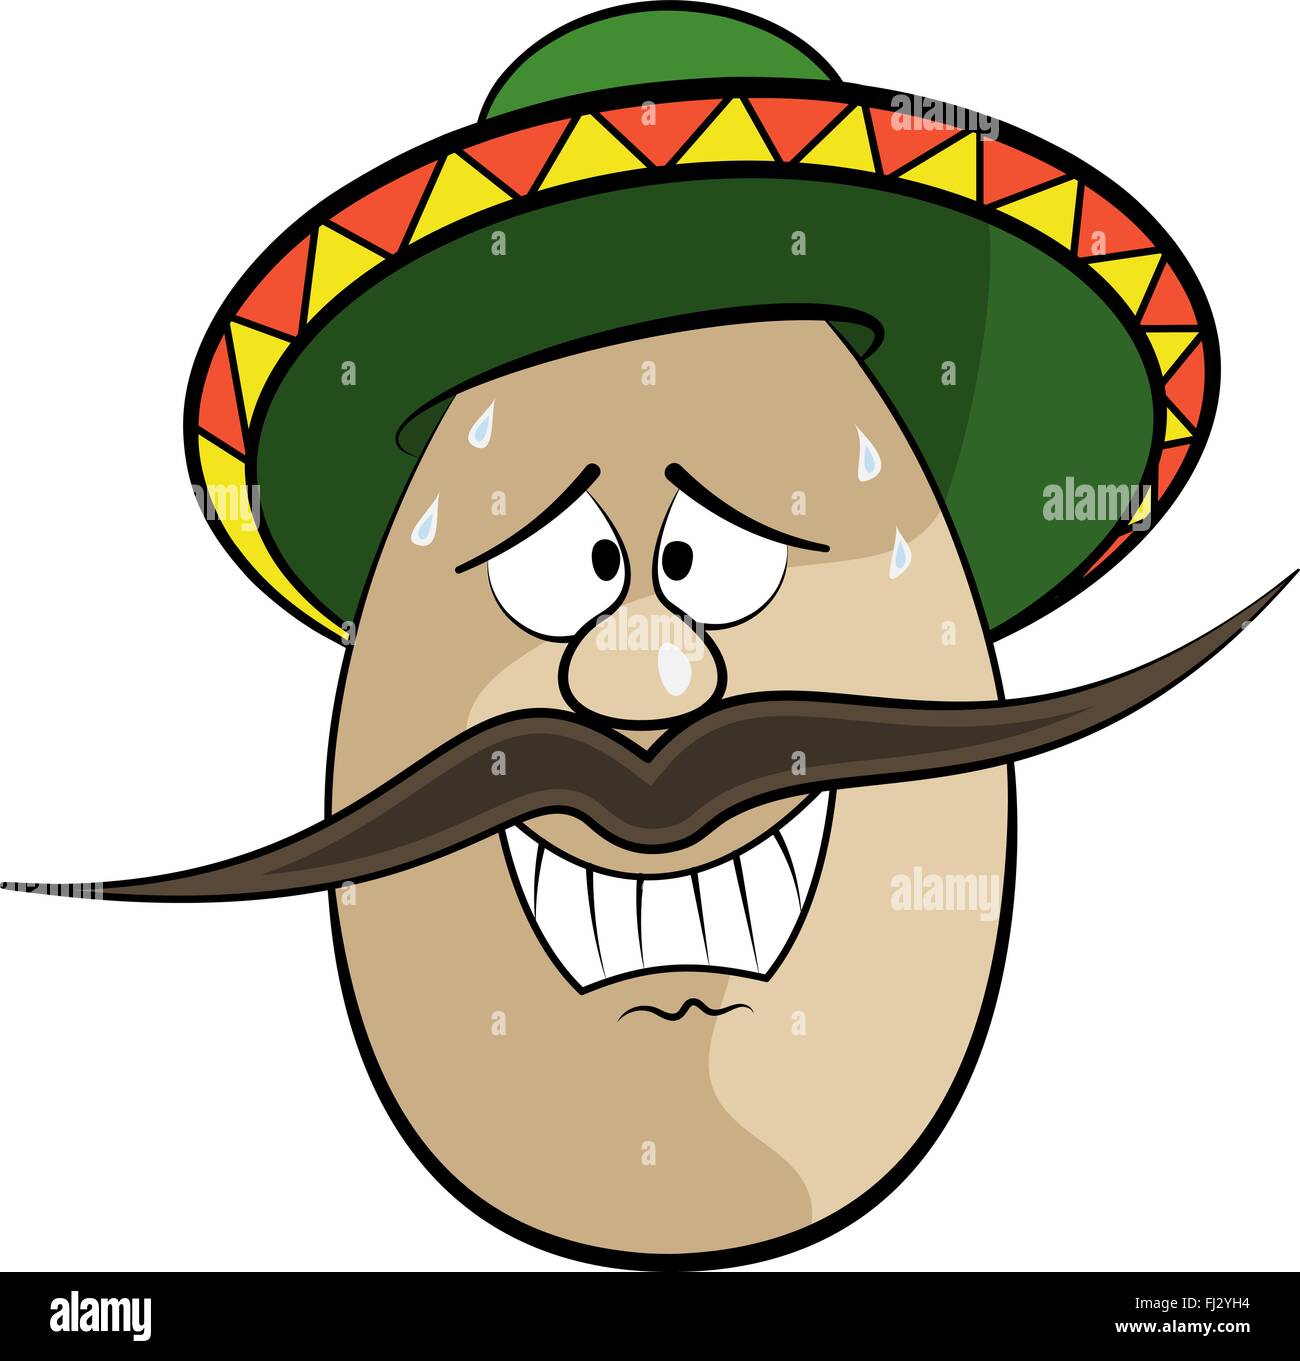 Divertida caricatura mexicana cara huevo personaje ilustración vectorial Ilustración del Vector